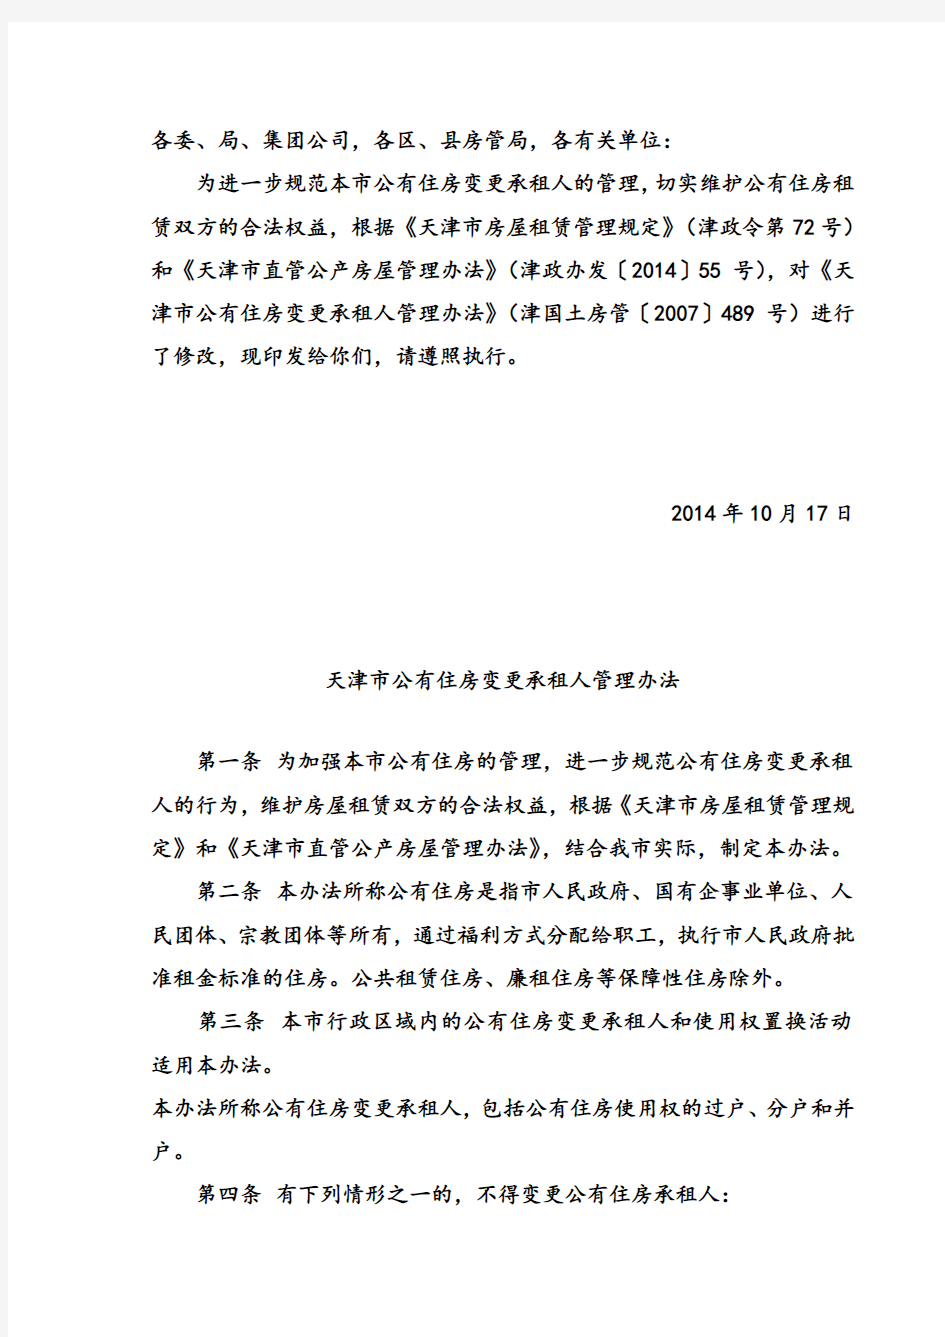 2014最新天津市公有住房变更承租人管理办法